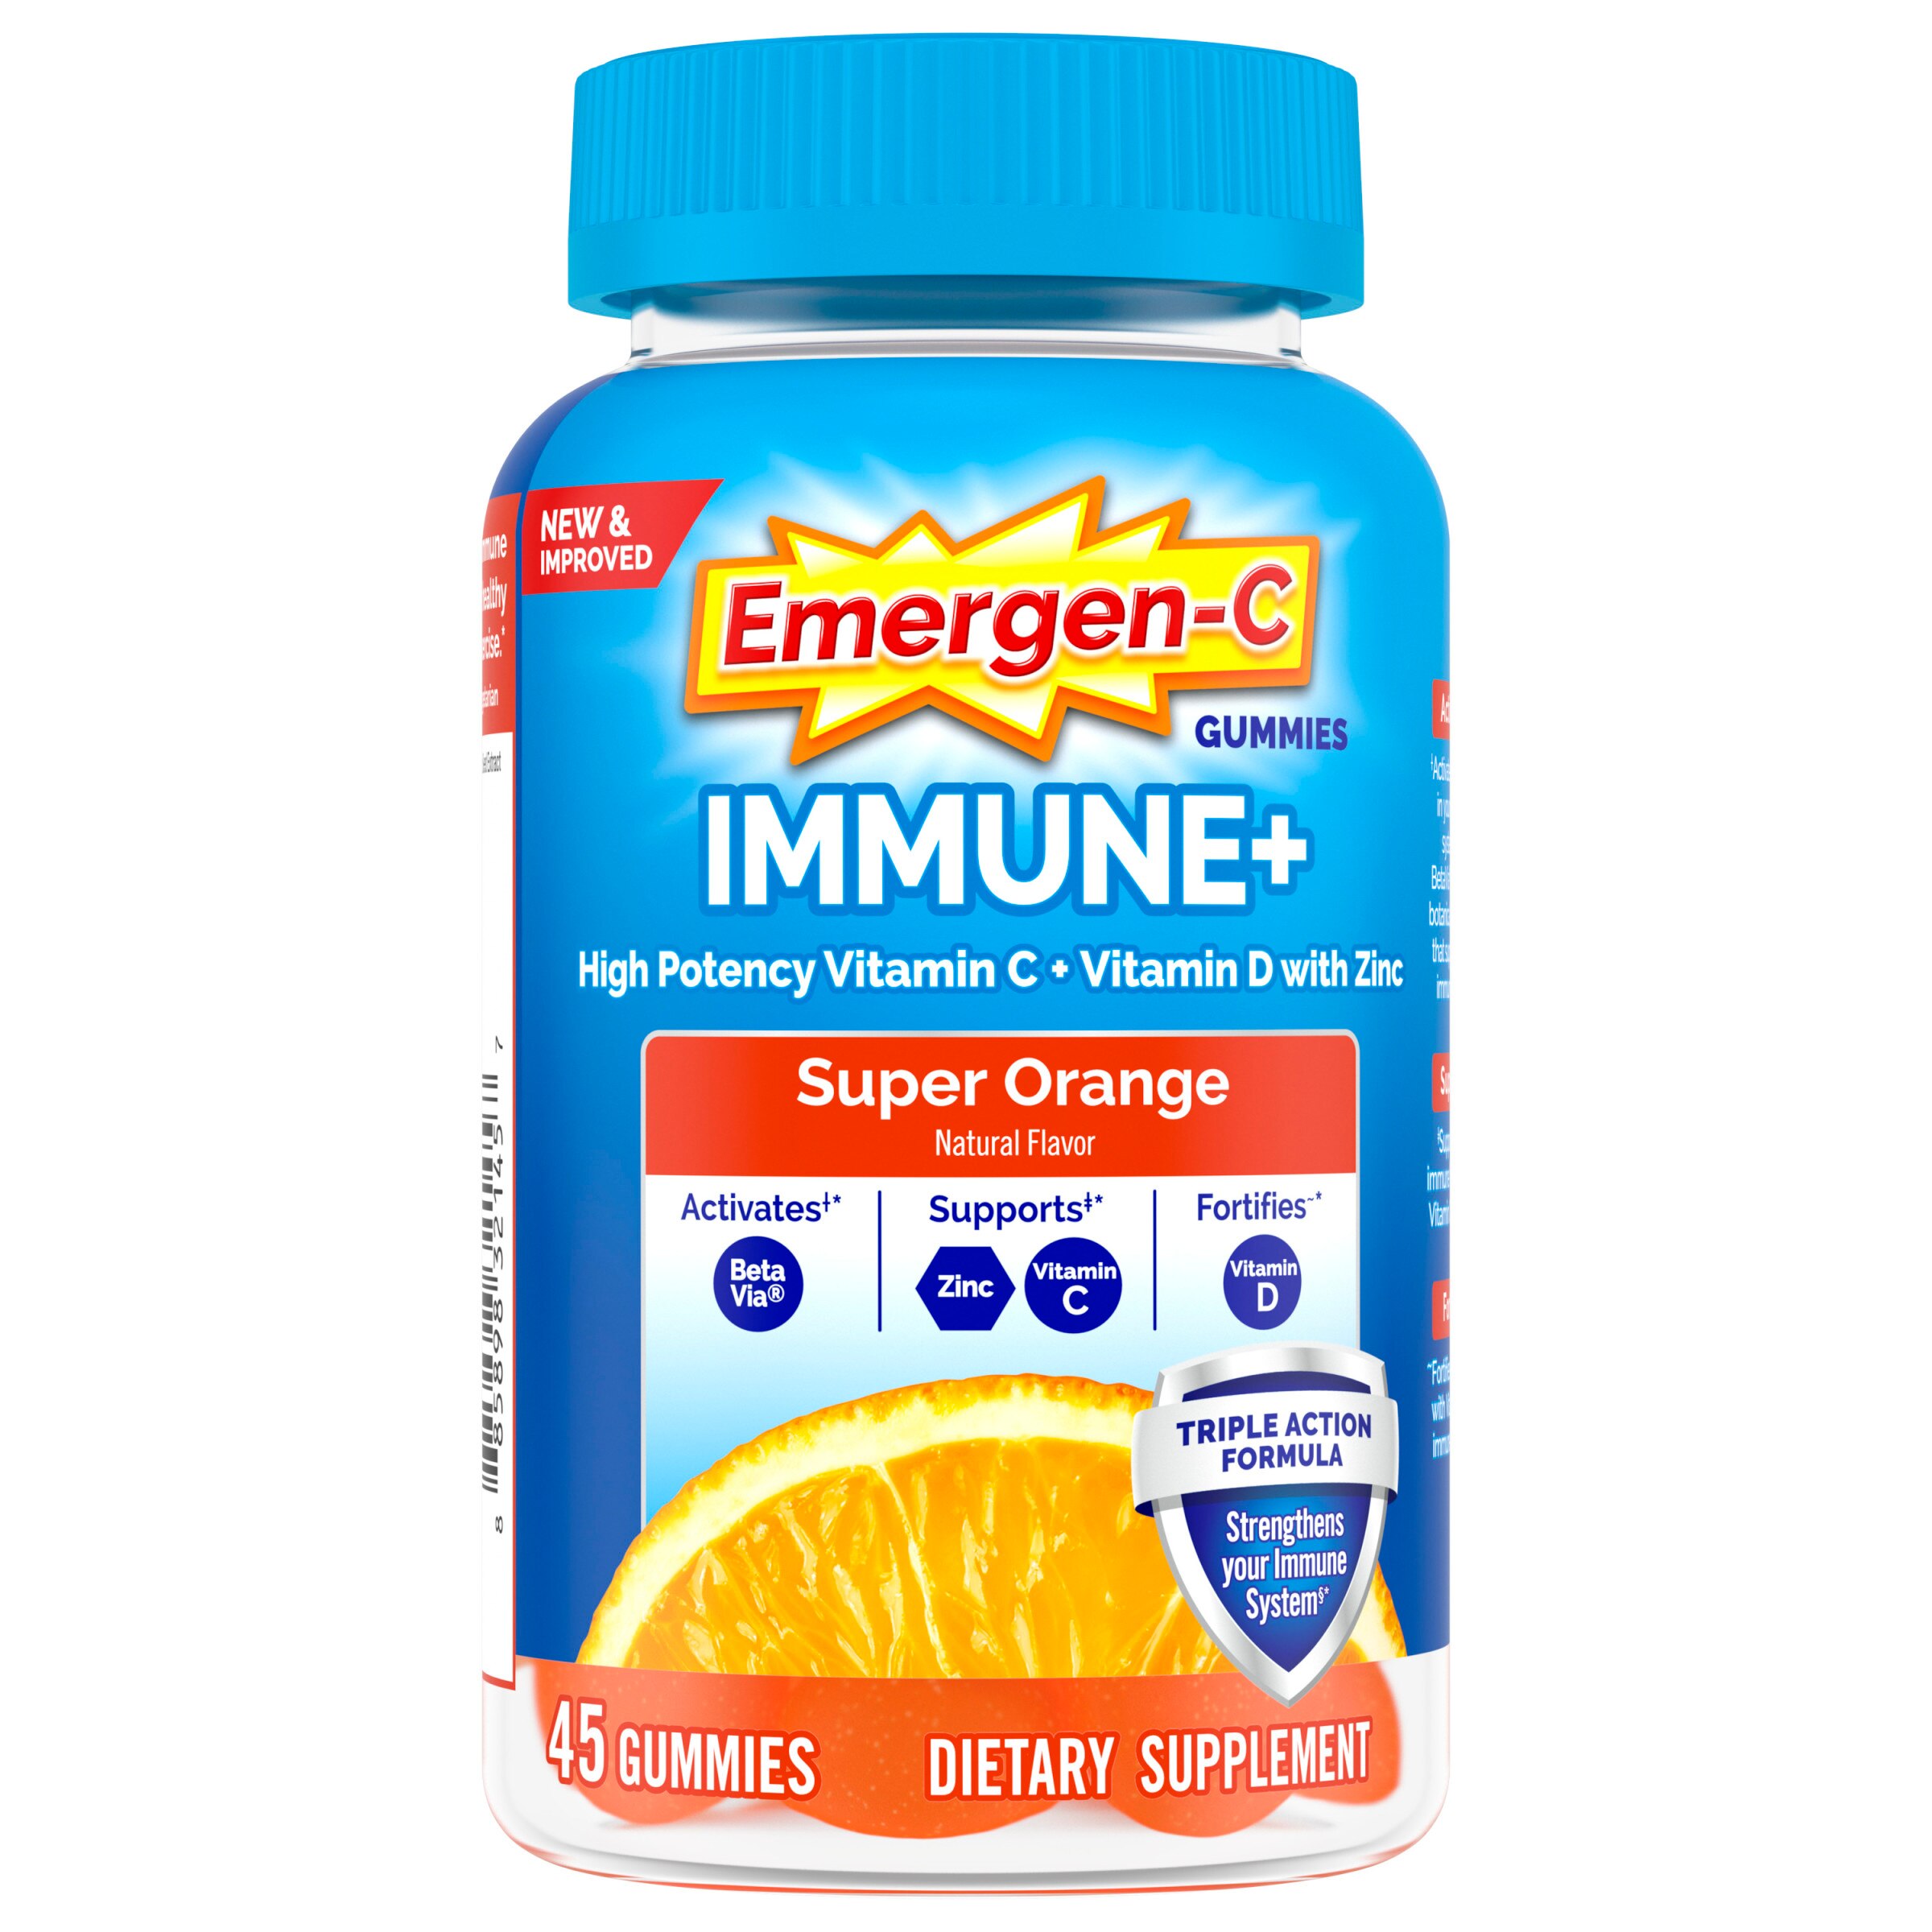 Emergen-C Immune+ Immune Gummies, Vitamin D plus 750 mg Vitamin C, Immune Support Dietary Supplement, Caffeine Free, Gluten Free - 45 Count